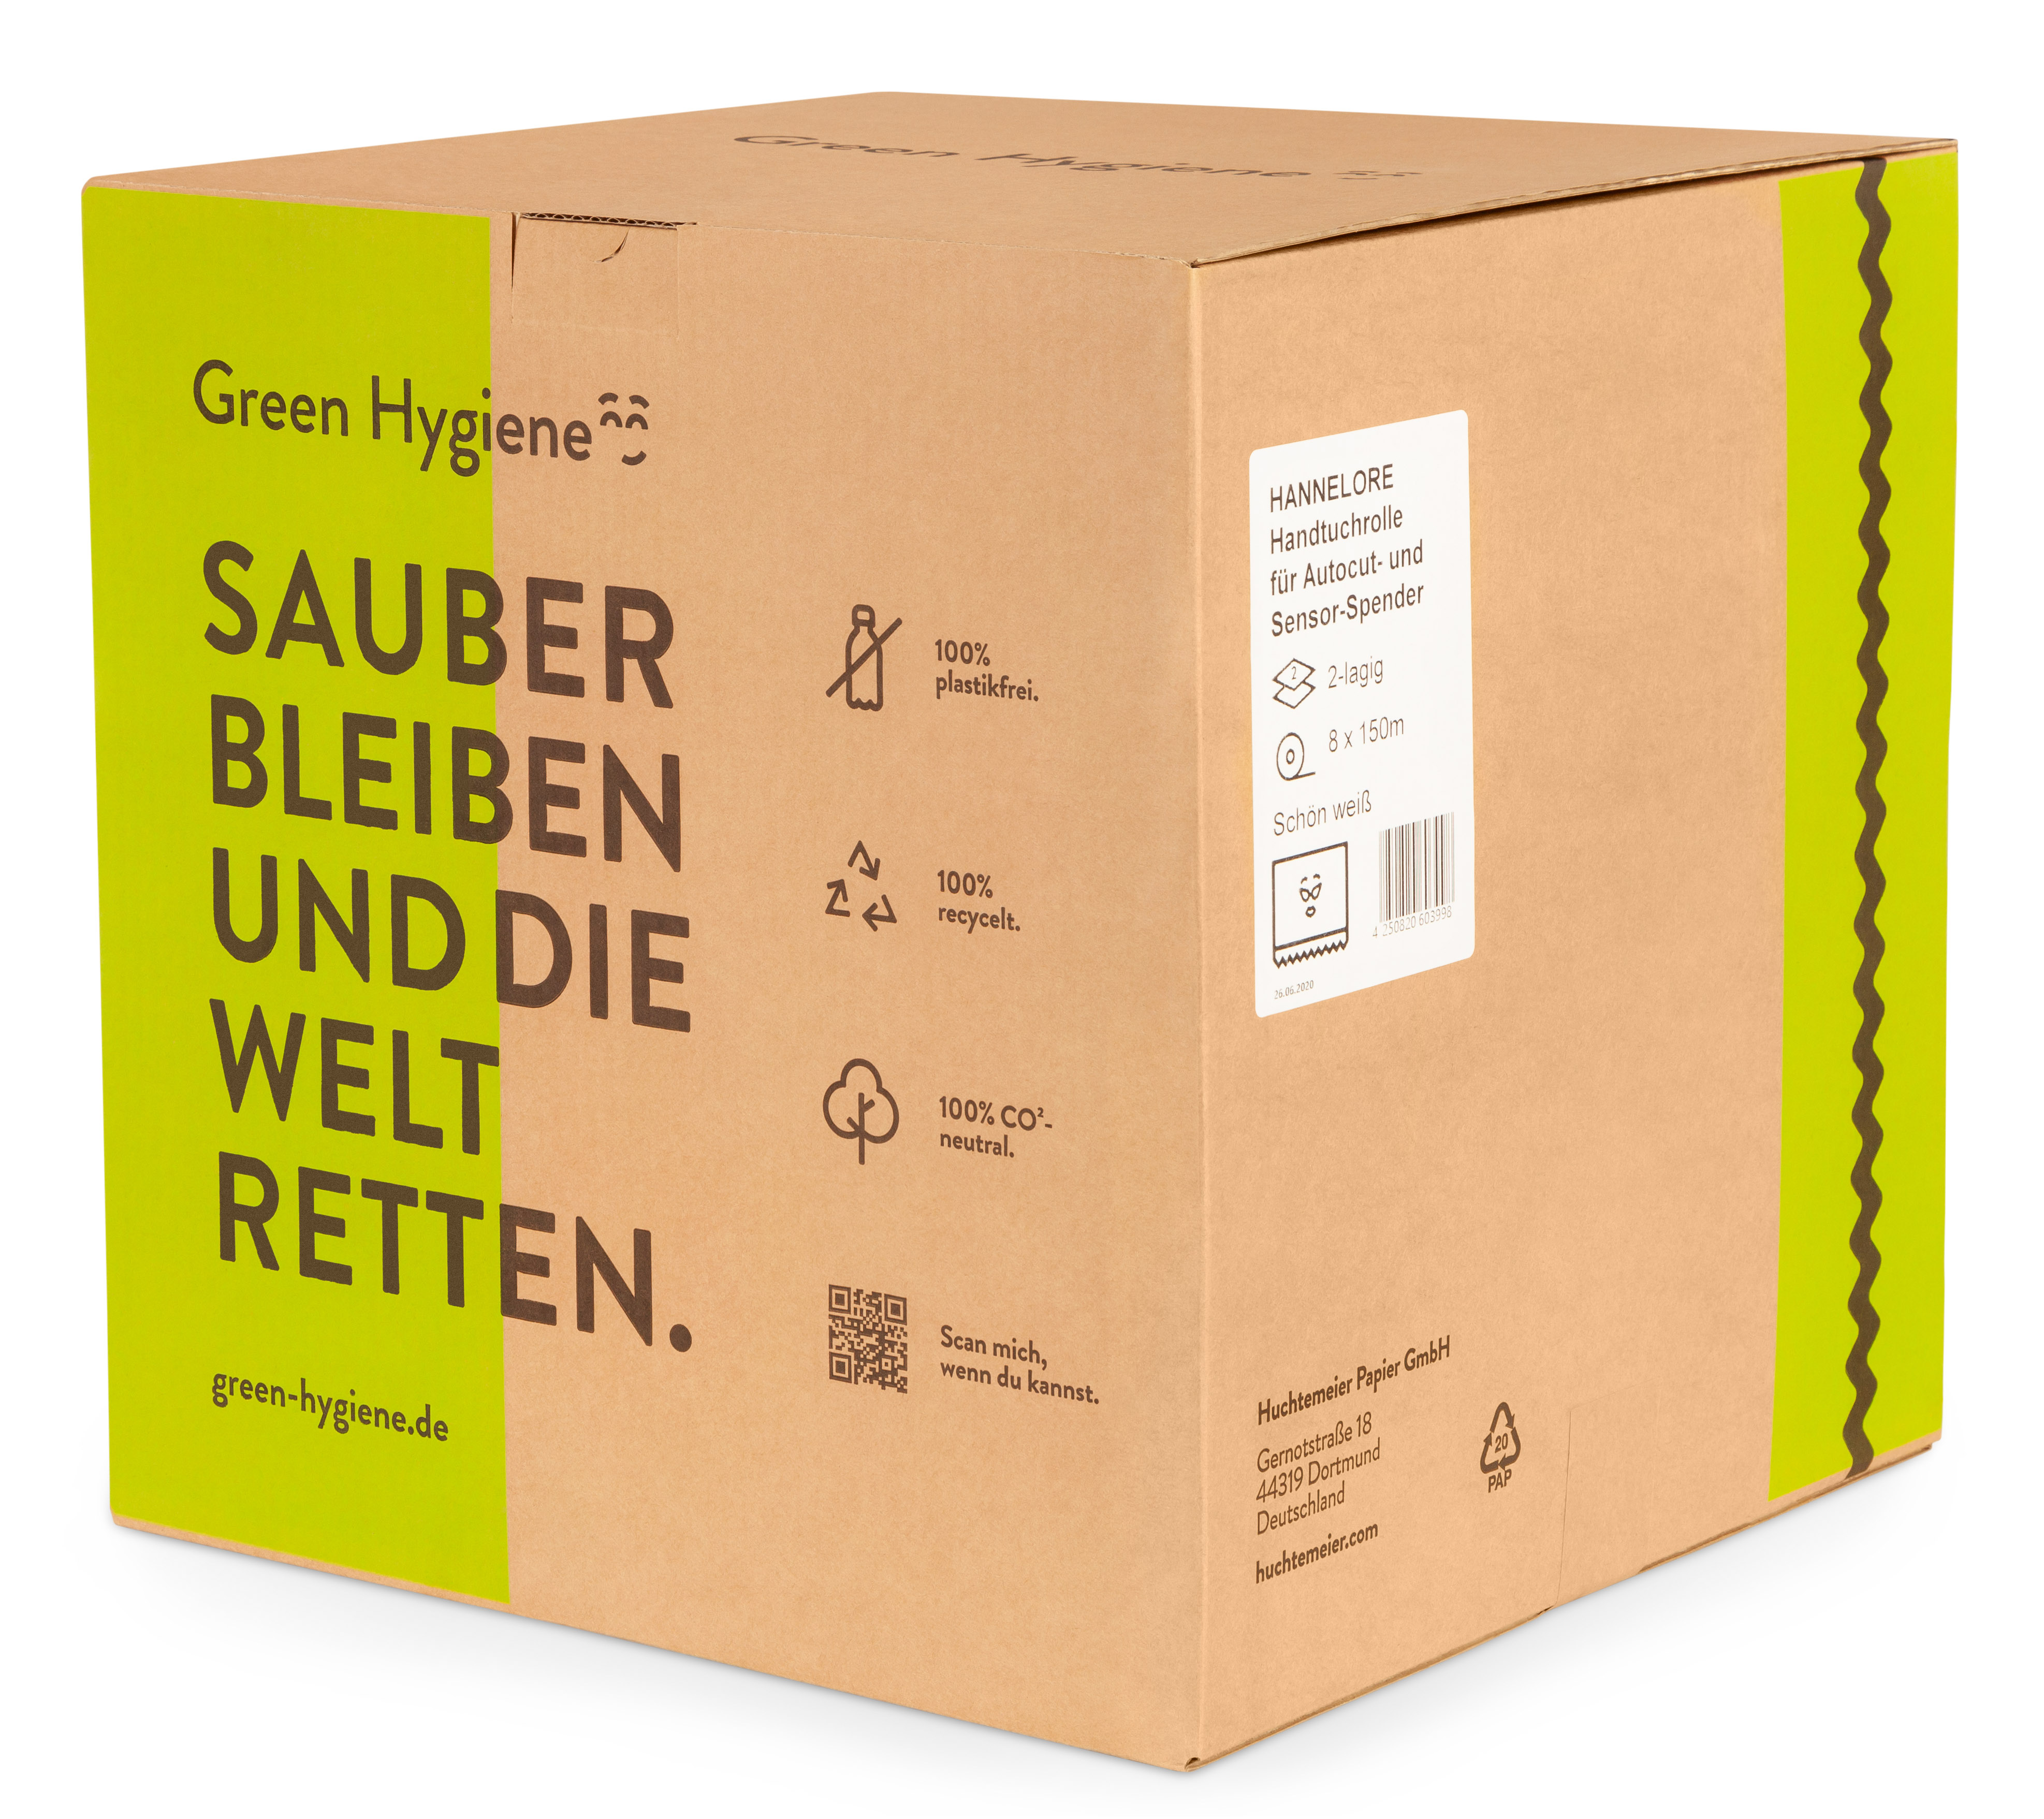 Green Hygiene - HANNELORE Handtuchrolle 2-lagig 8 Rollen á 150m